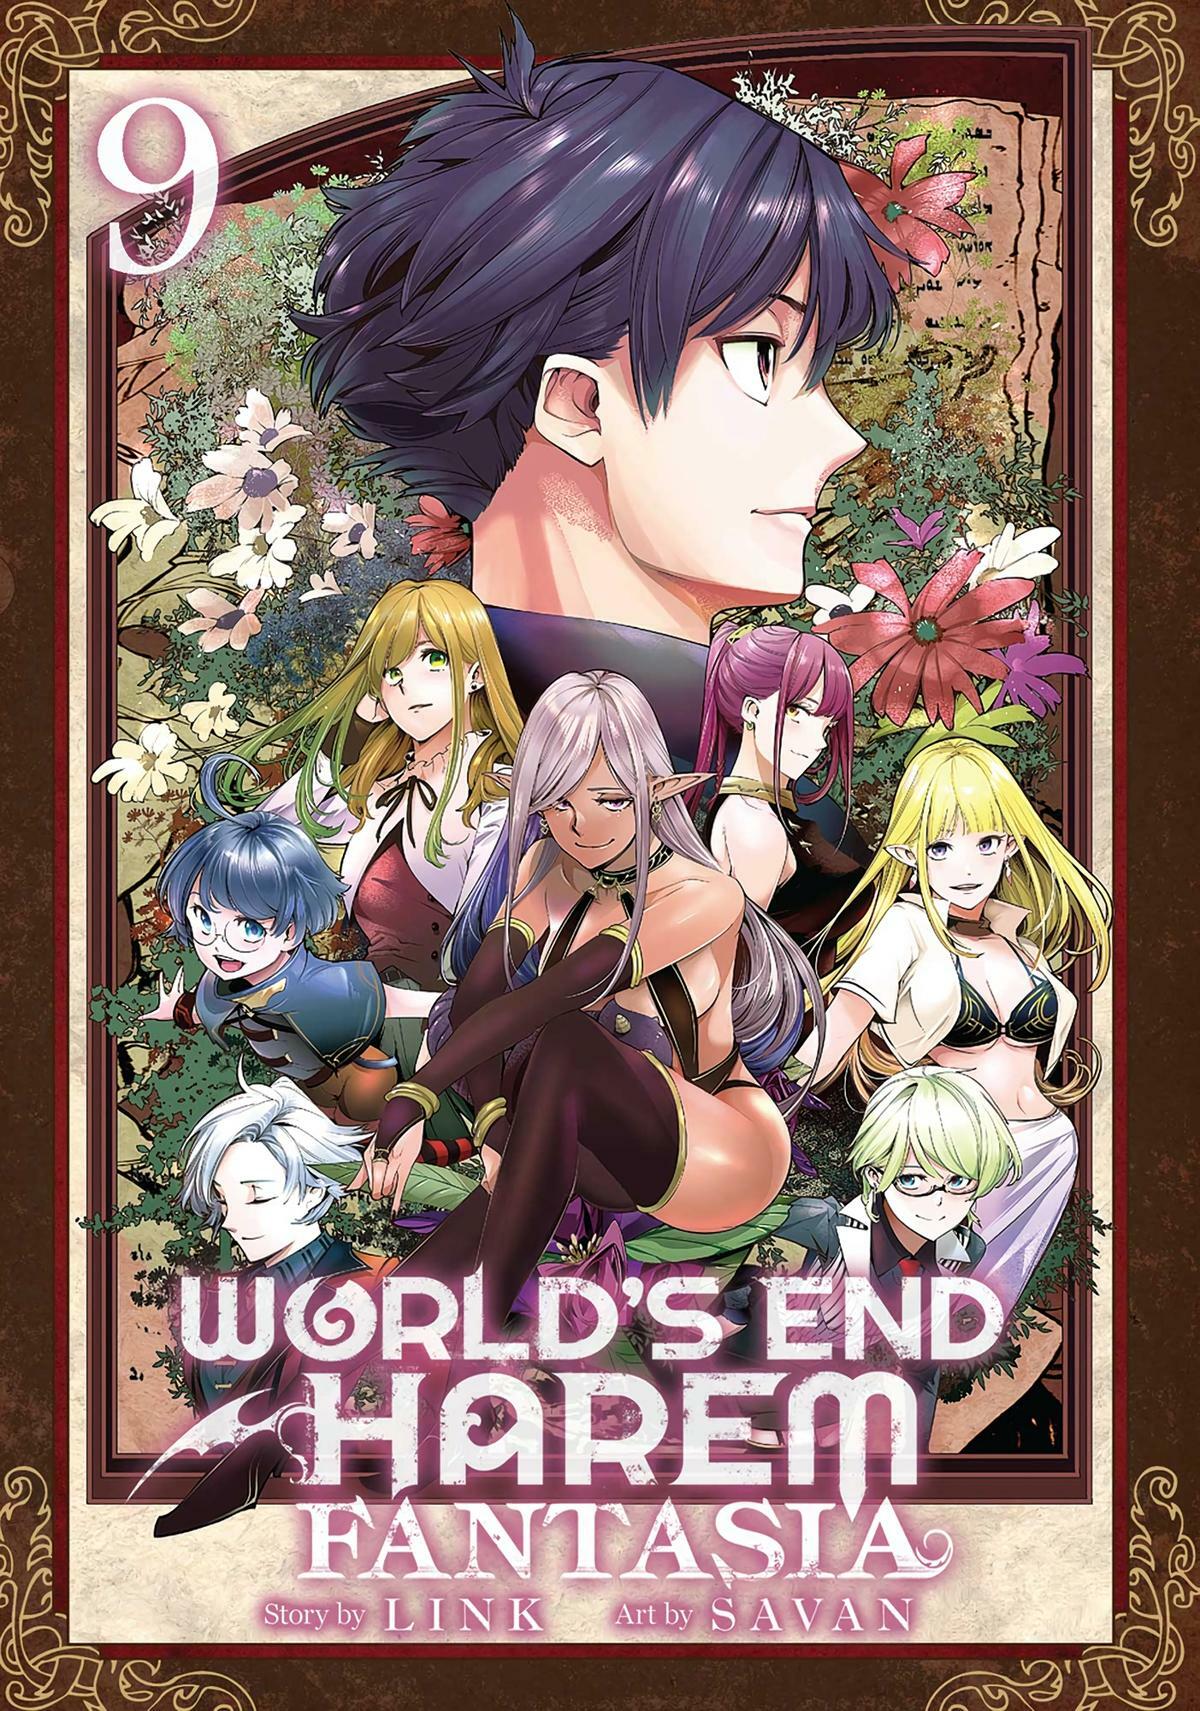 World's End Harem: Fantasia Vol. 2 by Link, Savan, Paperback